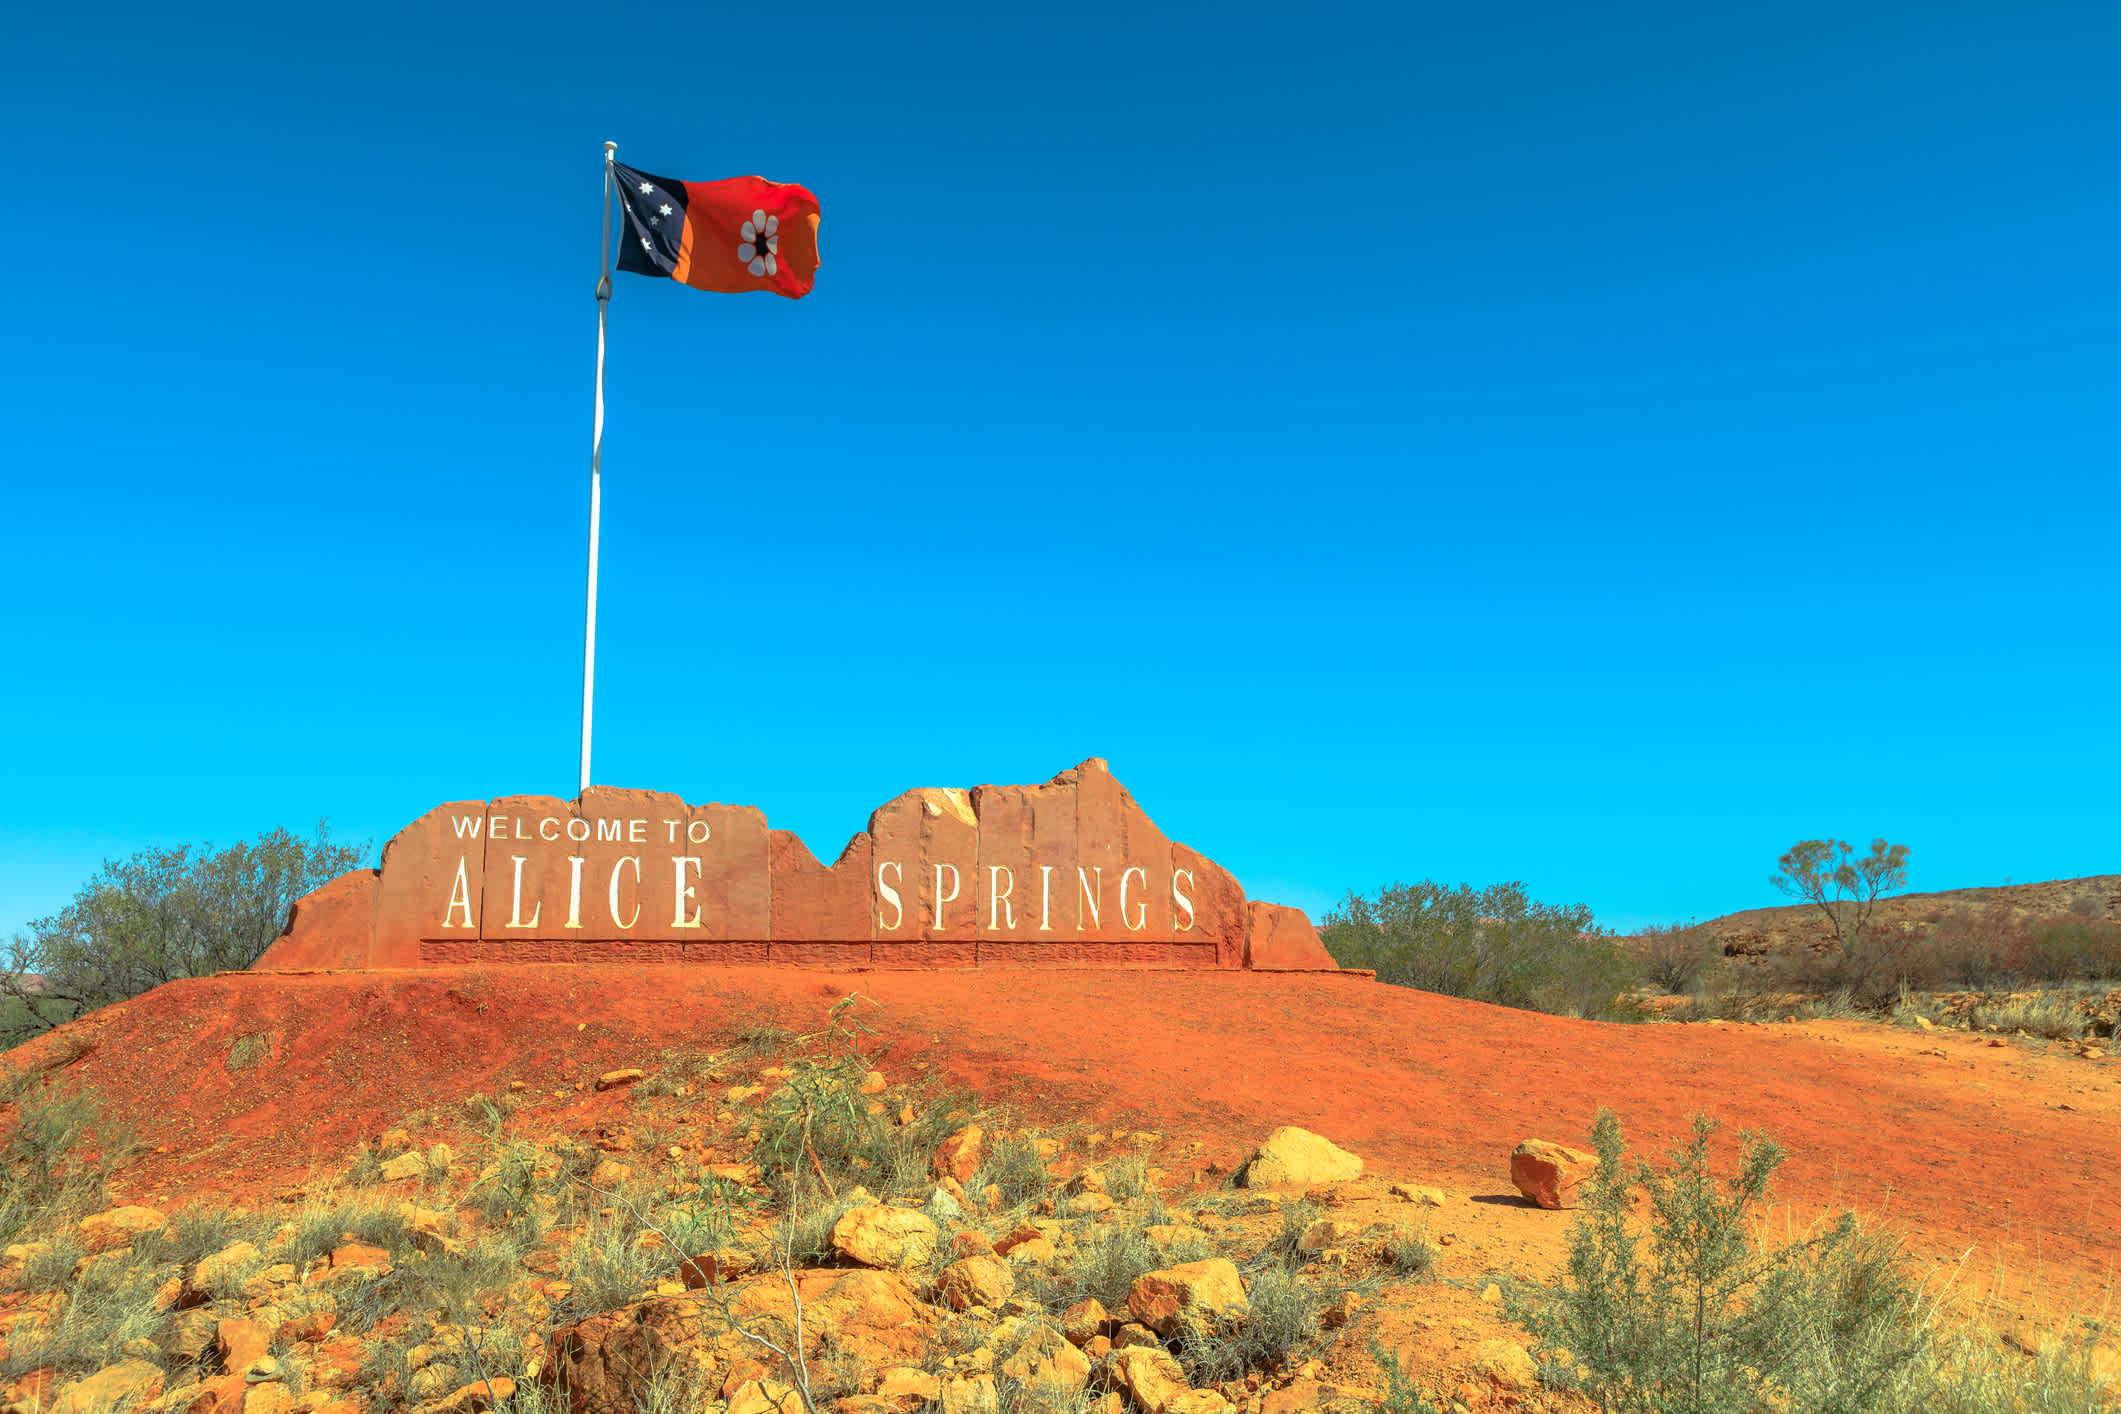 Panneau de bienvenue d'Alice Springs et drapeau australien du Territoire du Nord, dans le centre de l'Australie.
